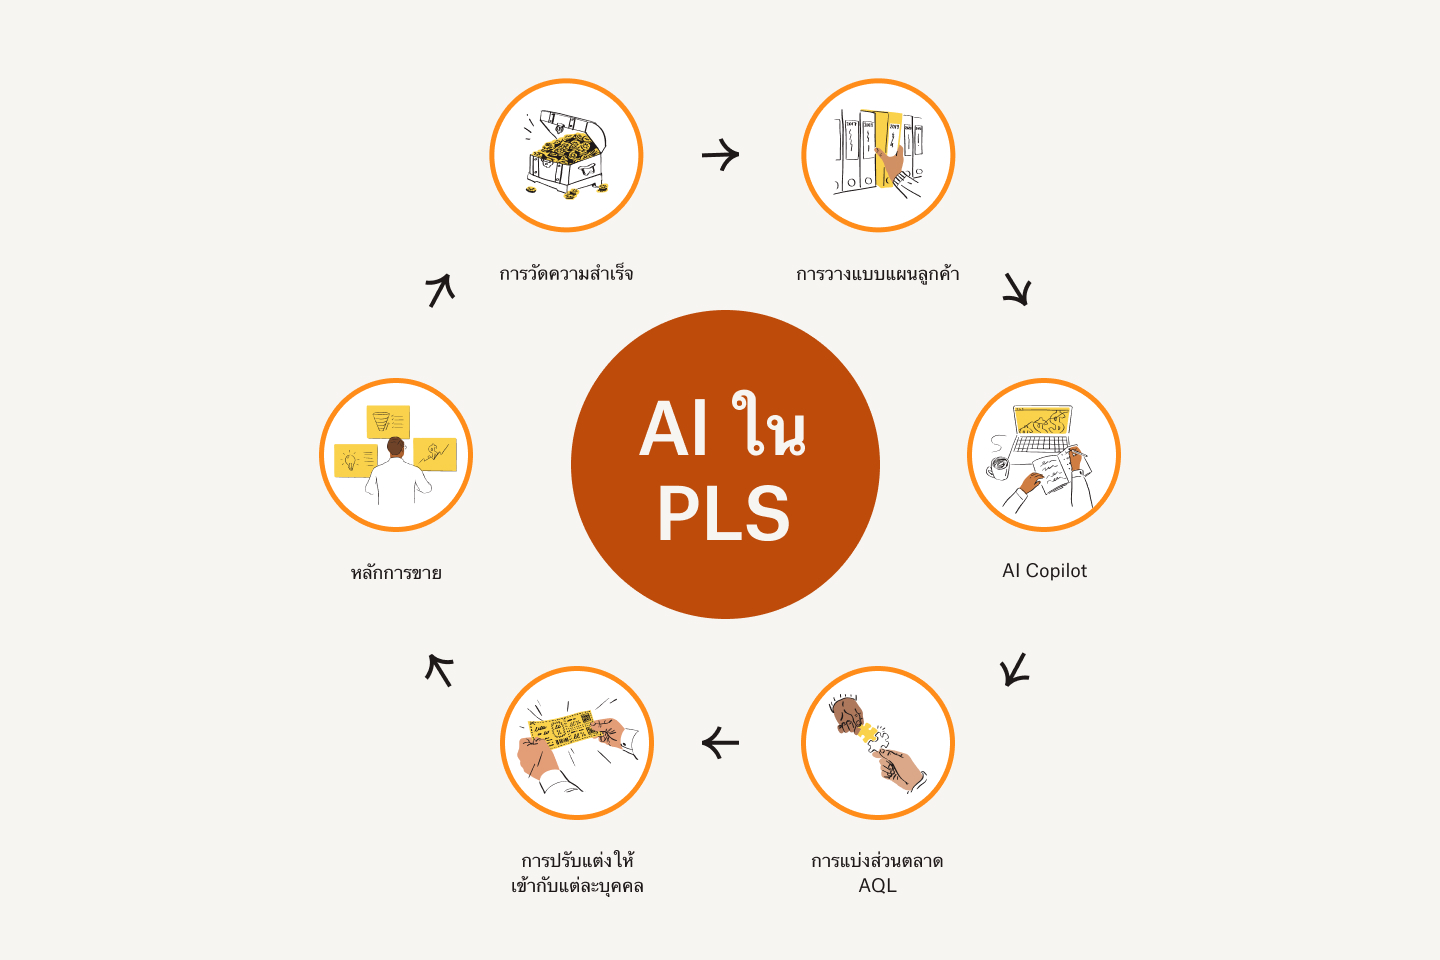 วงล้อการตลาดลูกค้าสำหรับ AI ใน PLS ซึ่งประกอบด้วยการวัดผลความสำเร็จ, การสร้างแบบจำลองลูกค้า, AI ผู้ช่วย, การแบ่งส่วน AQL, การปรับให้ตรงต่อความต้องการ, วิธีการทางสังคม และการวัดความสำเร็จ